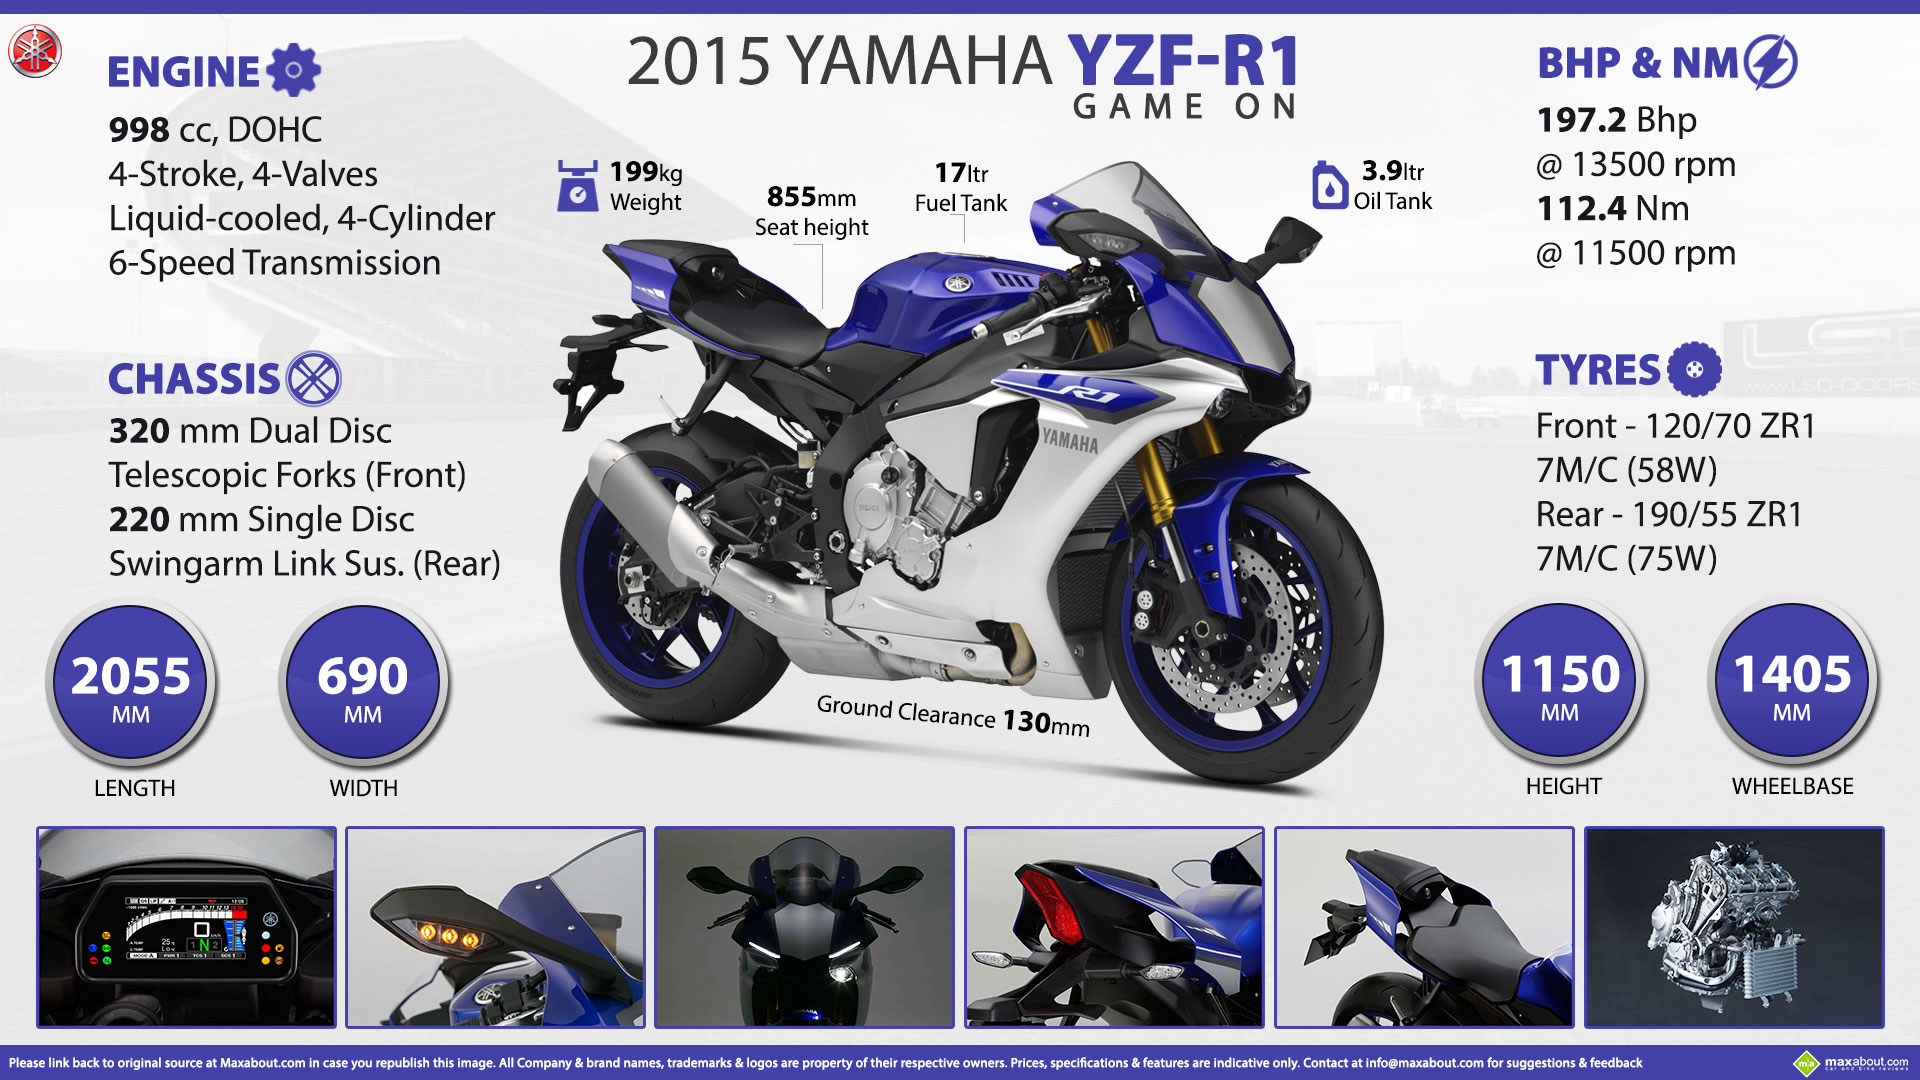 Yamaha Yzf R1 Game On